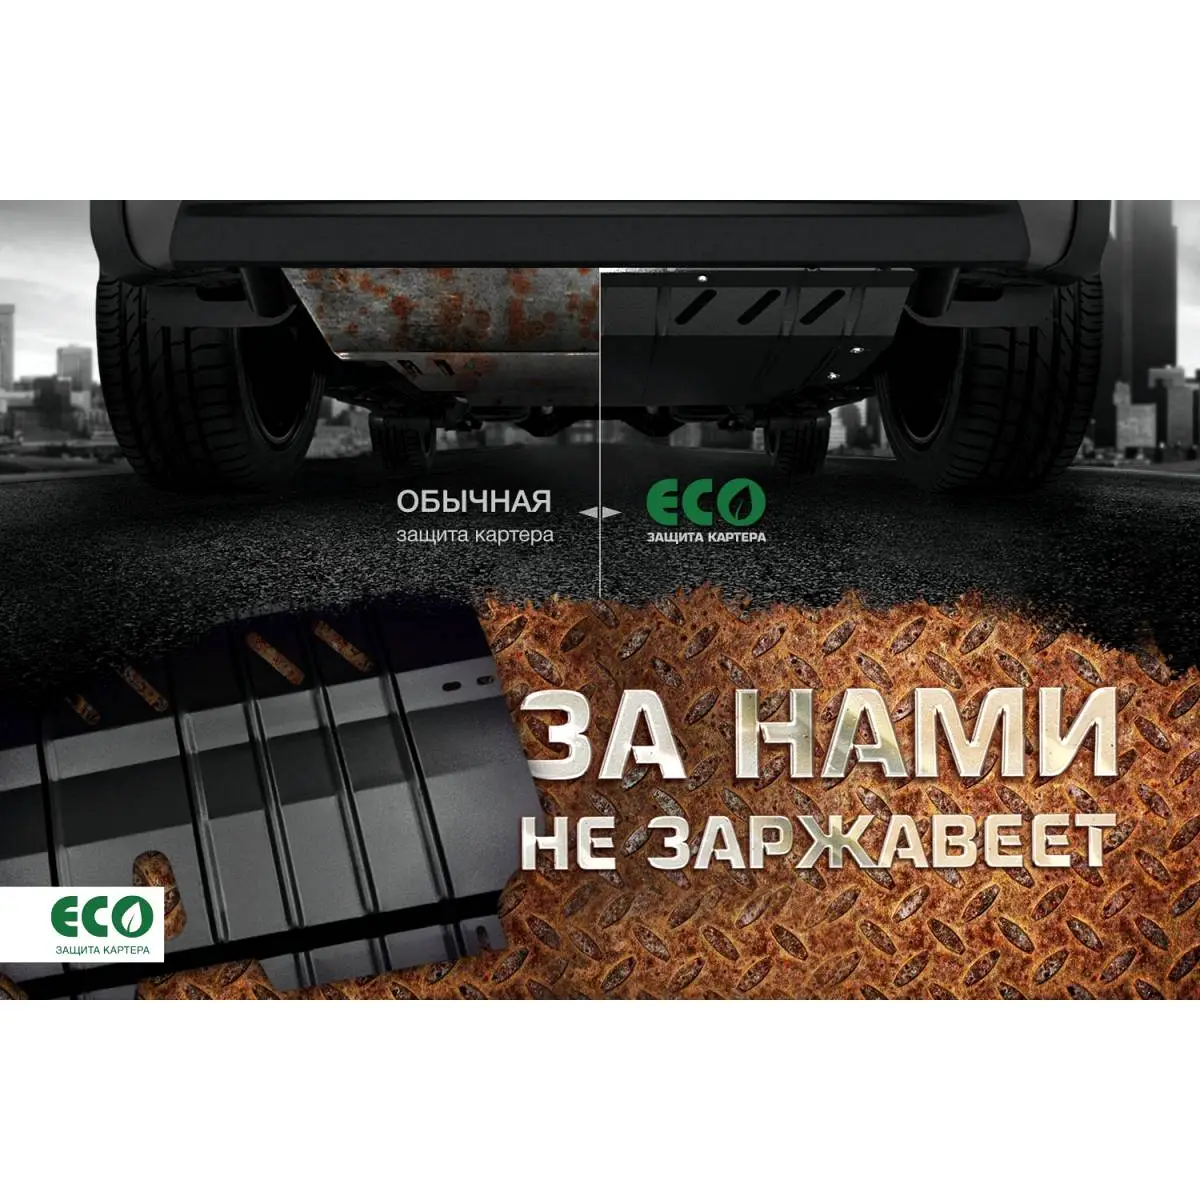 Комплект защиты картера и крепеж Eco AHMPSL S26M 8D eco4831020 1437099116 изображение 9